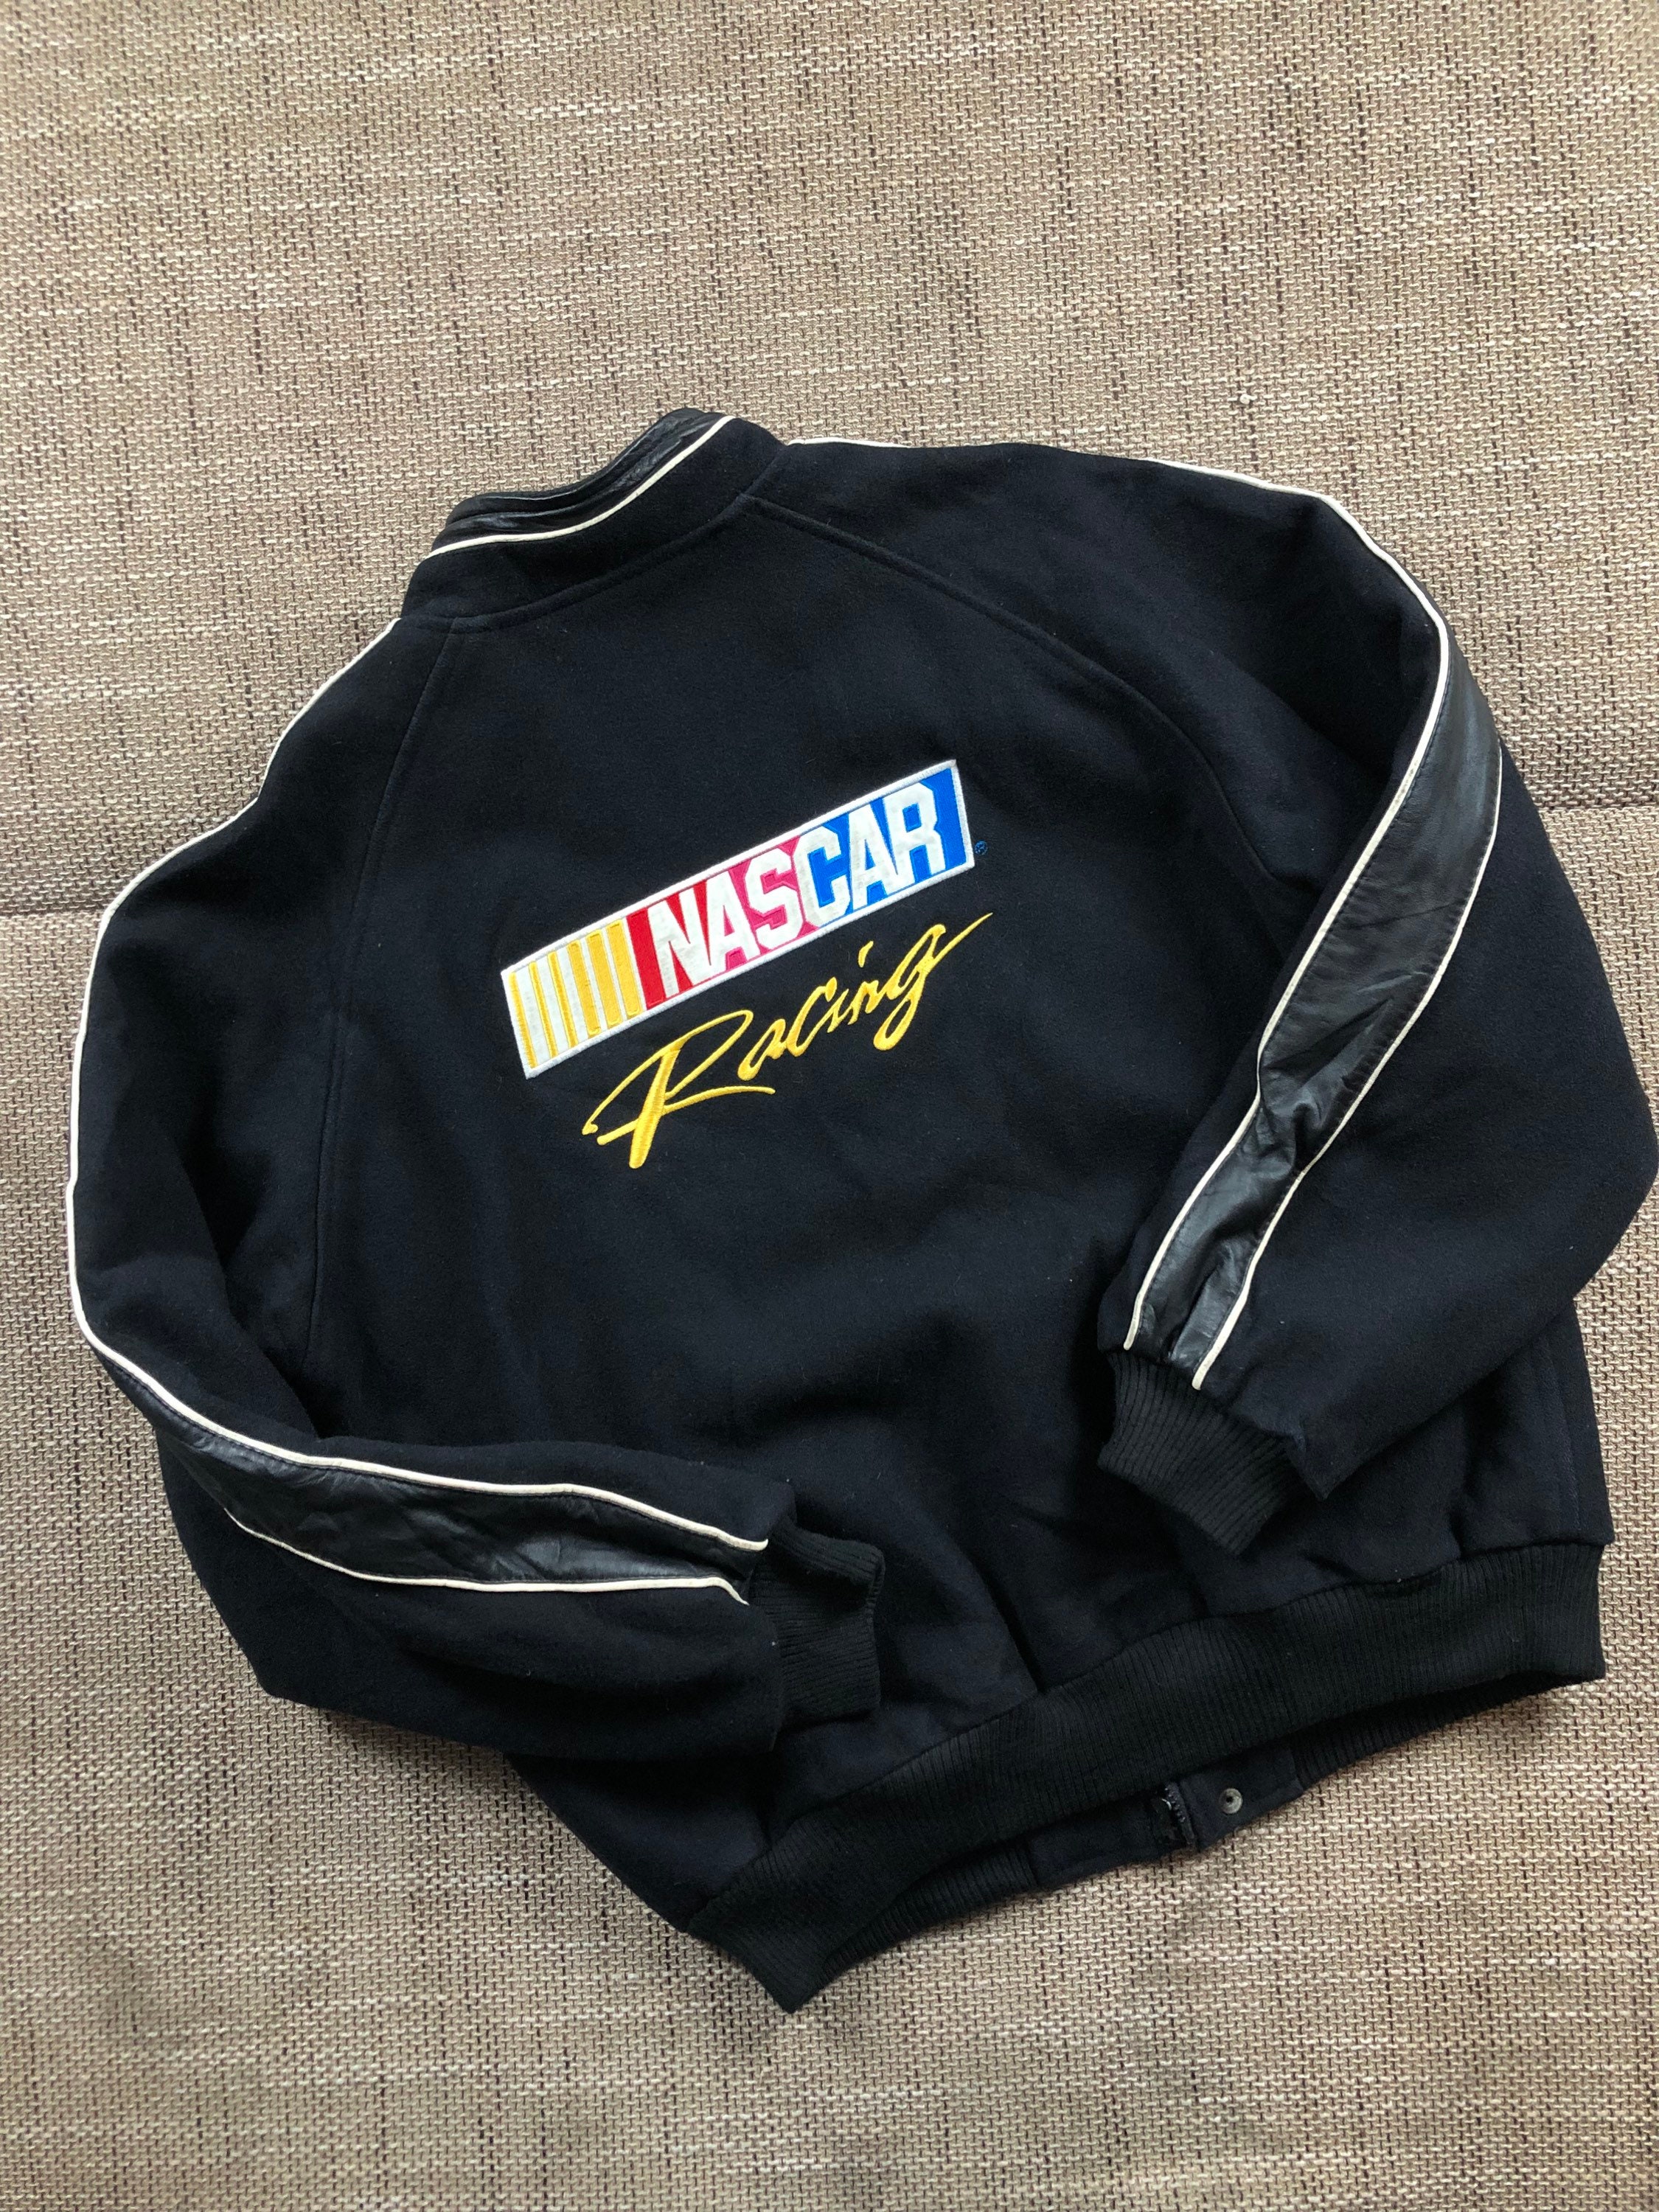 Nascar racing jacket for sale  